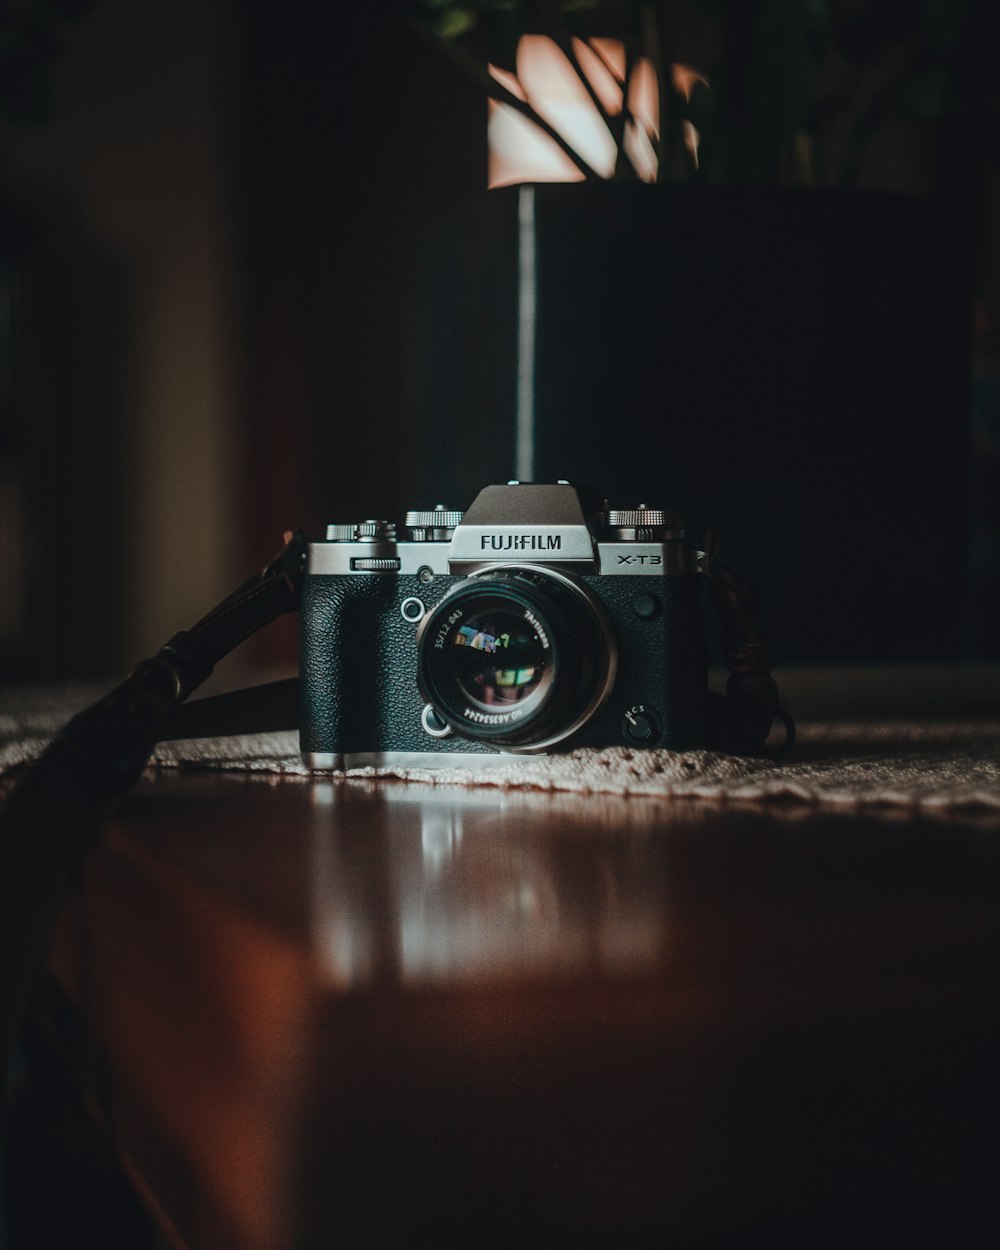 Fotocamera reflex digitale Nikon nera e argento su tavolo di legno marrone